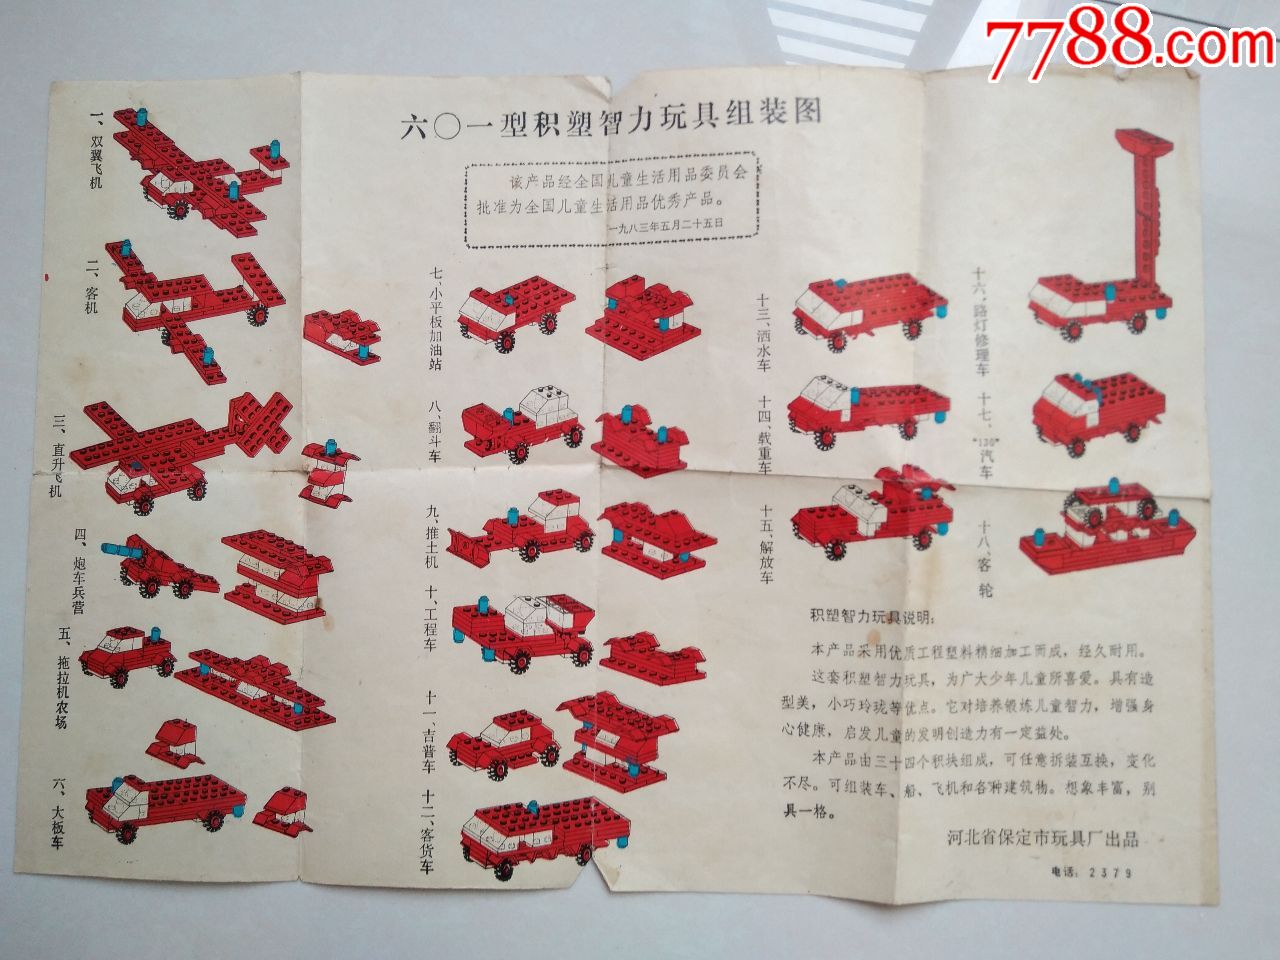 1983年六o一型积塑智力玩具组装图(河北省保定市玩具厂出品)